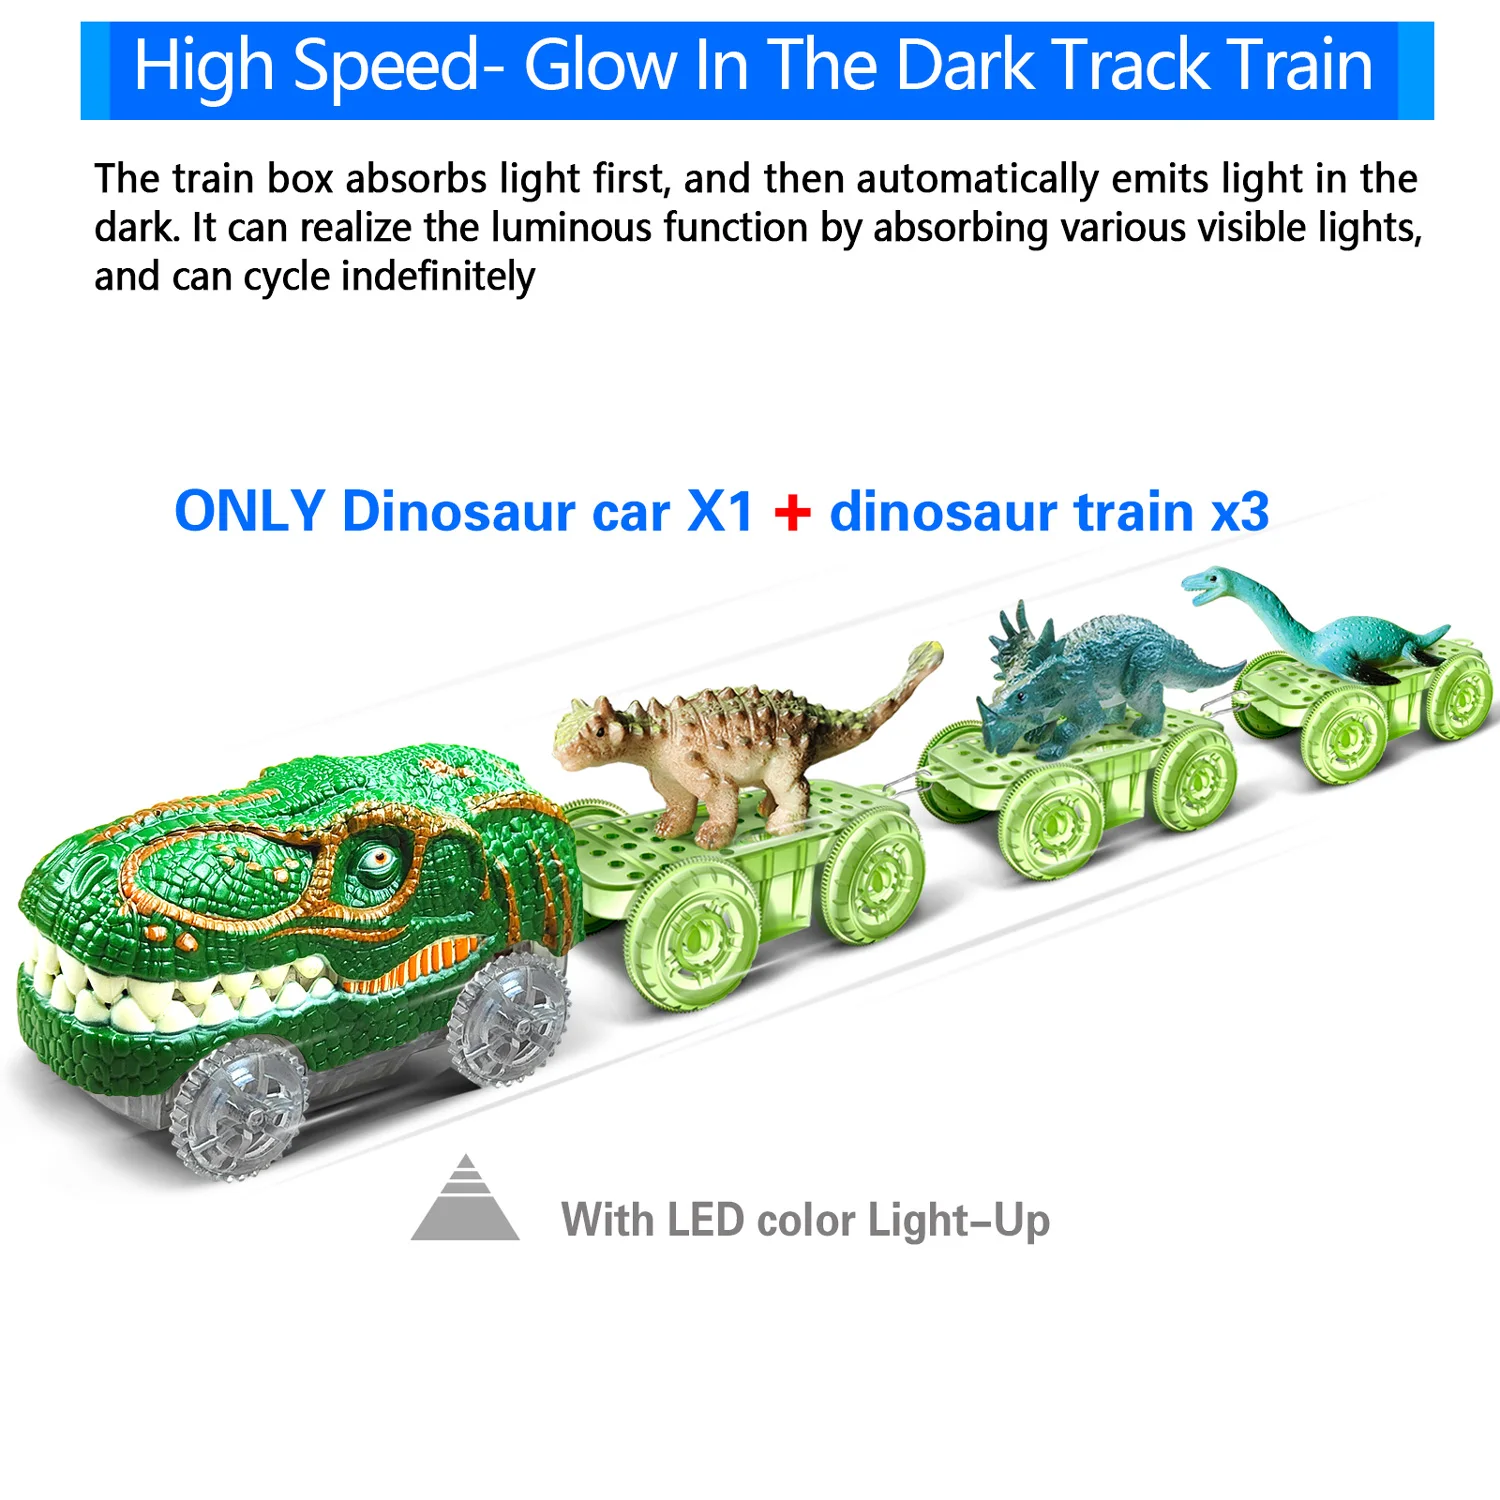 dinosaur train